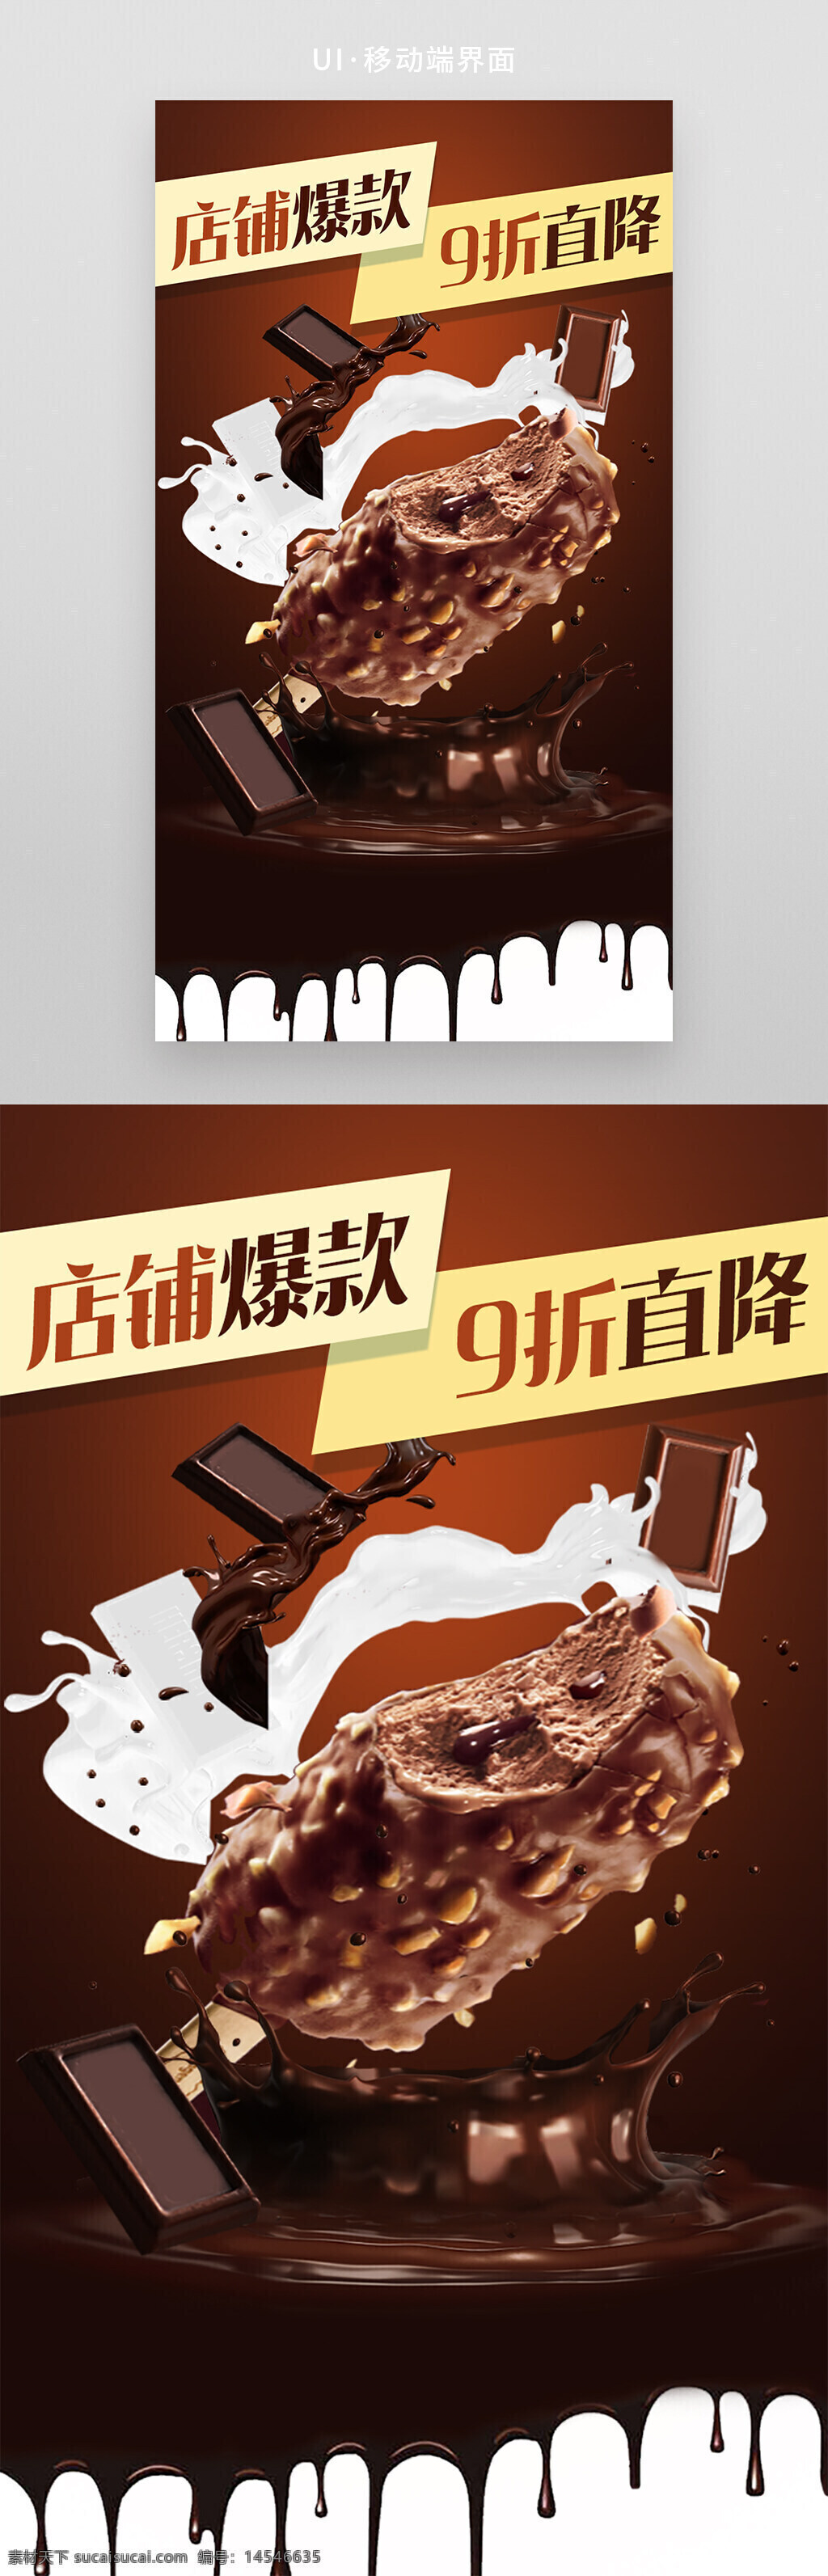 电商设计零食食品海报 巧克力 牛奶 冰淇淋 新品上市 店铺推荐 场景图 飞溅